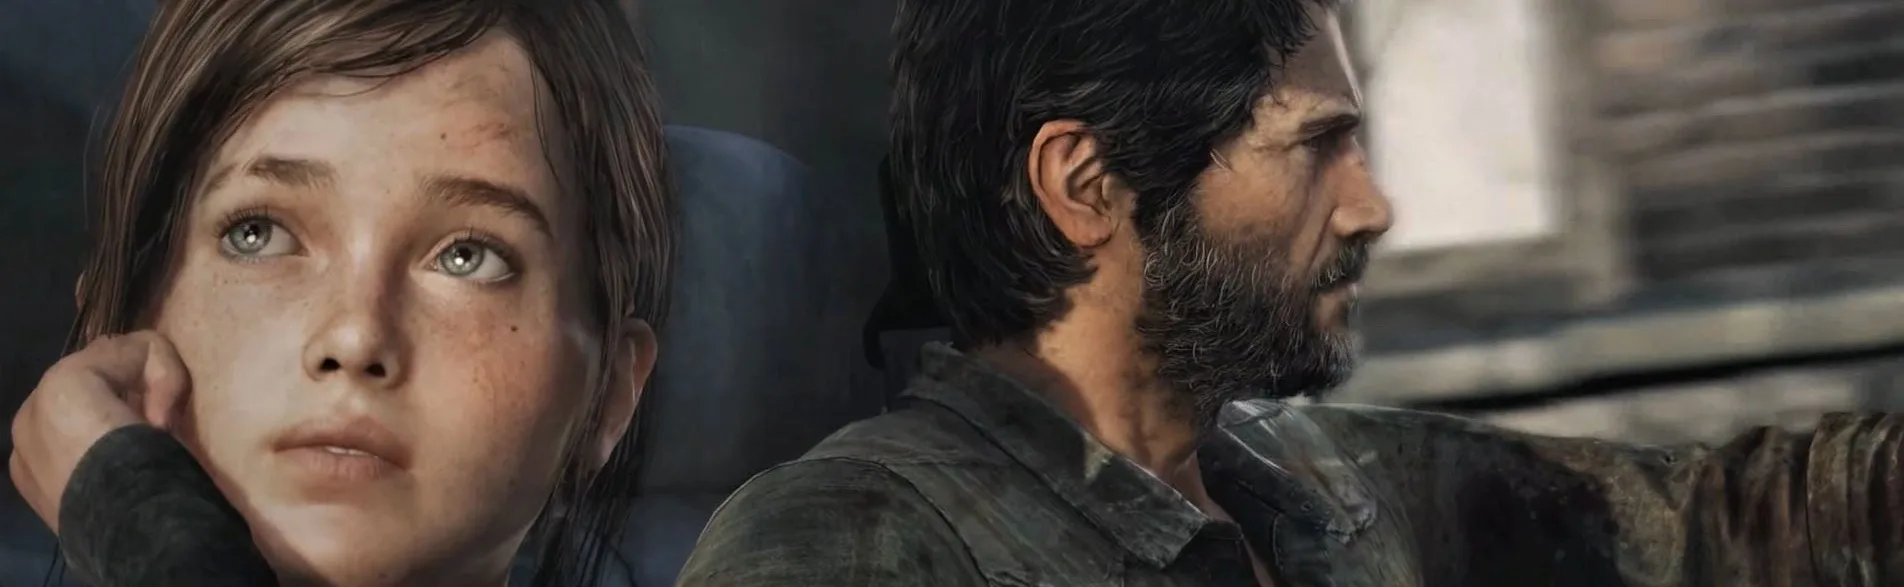 ريميك The Last of Us سيُقدم إضافات مميزة